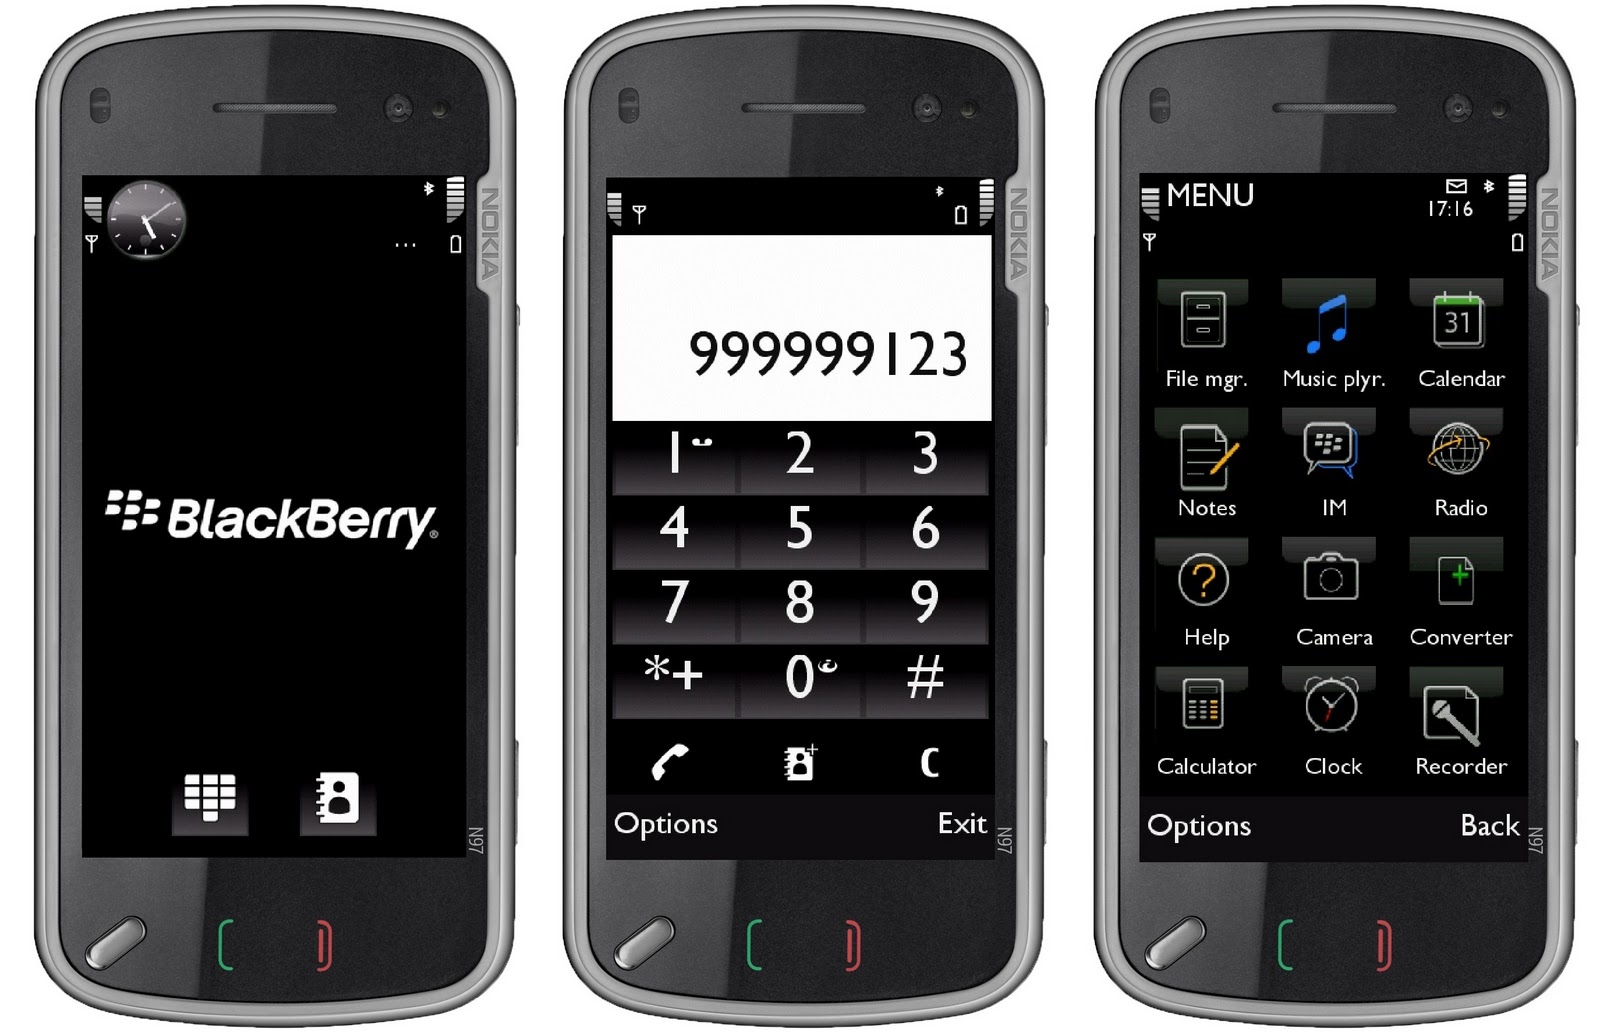 nokia Symbian S60v5 (5800,5230,5228,5235,5530,5233,X6,N97/mini,C6 dll